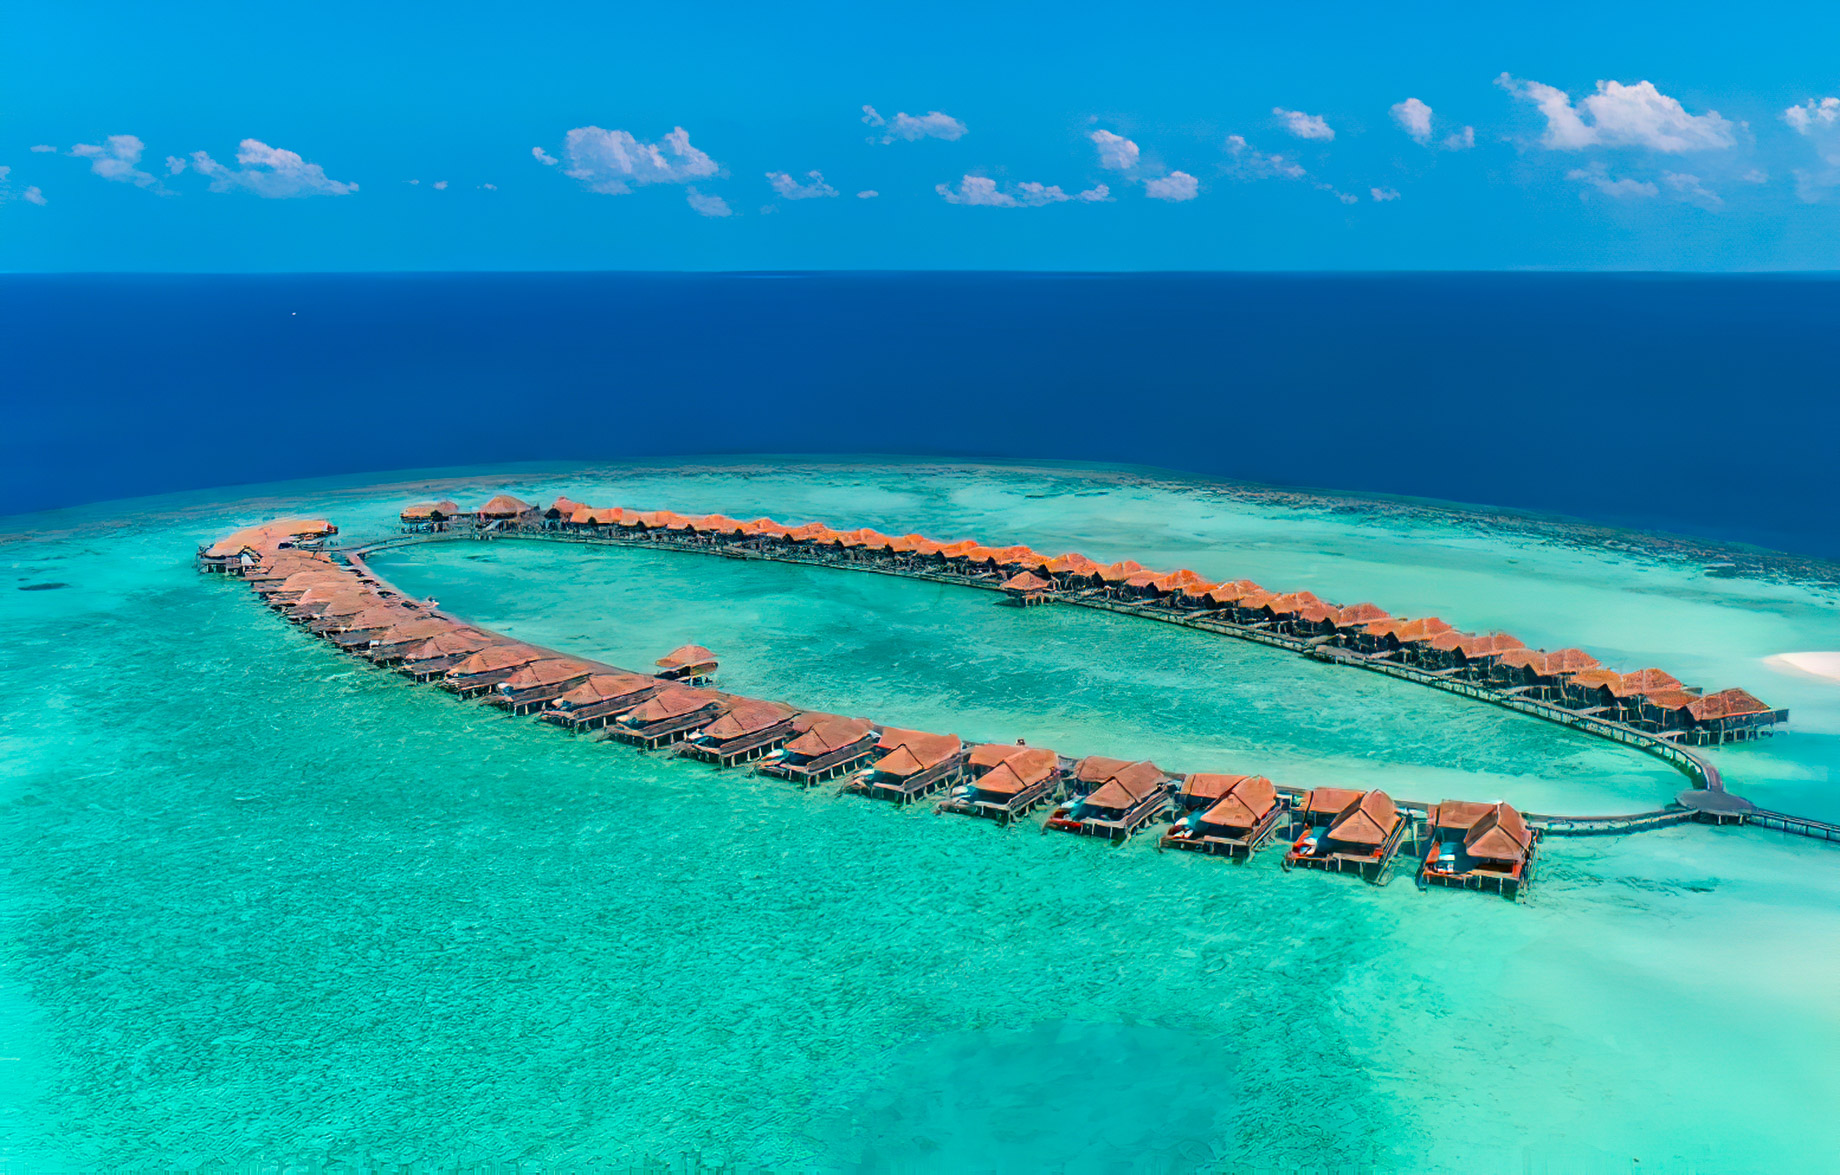 Anantara Kihavah Maldives Villas Resort – Baa Atoll, Maldives – Overwater Pool Villas Aerial View